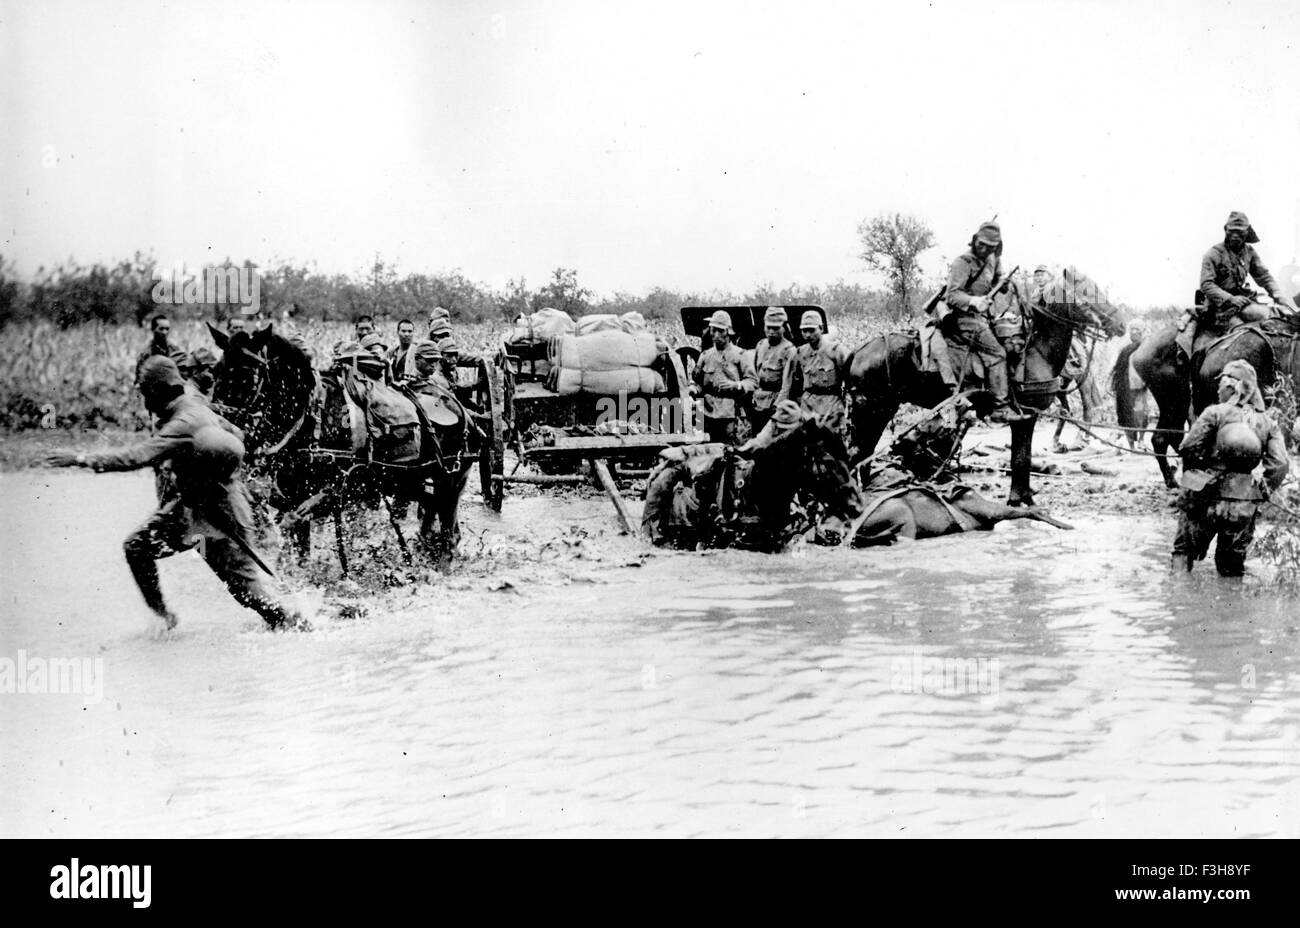 SINO-giapponese la guerra 1931-1945. Giapponese unità di artiglieria che attraversa un fiume di 1940 Foto Stock